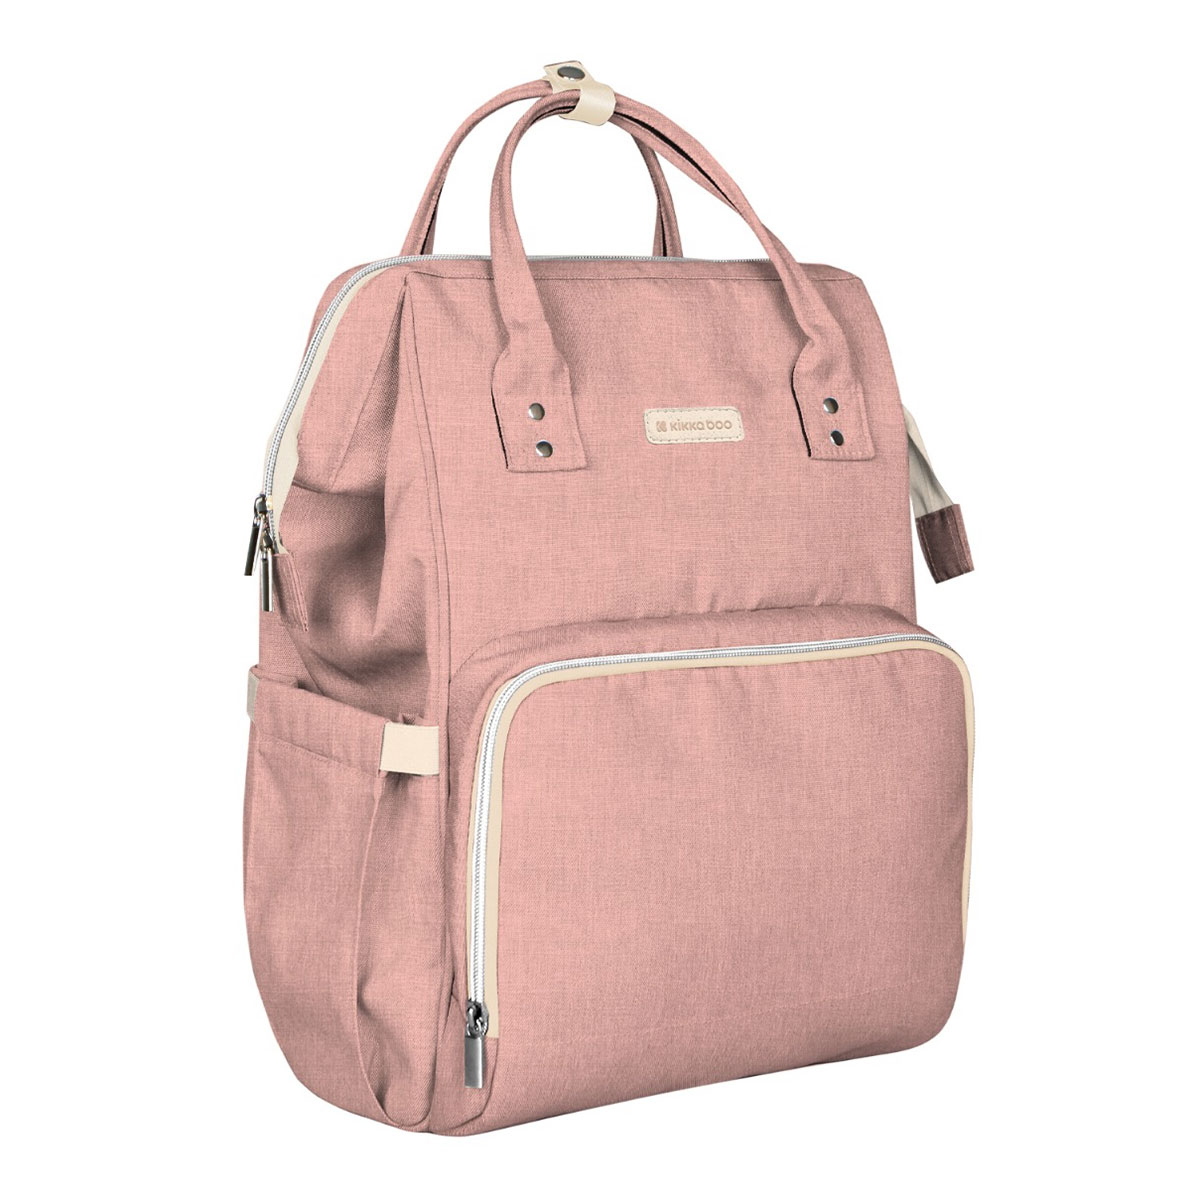 Τσάντα Αλλαξιέρα Backpack (21x27x42) Kikka Boo Siena Pink 252741